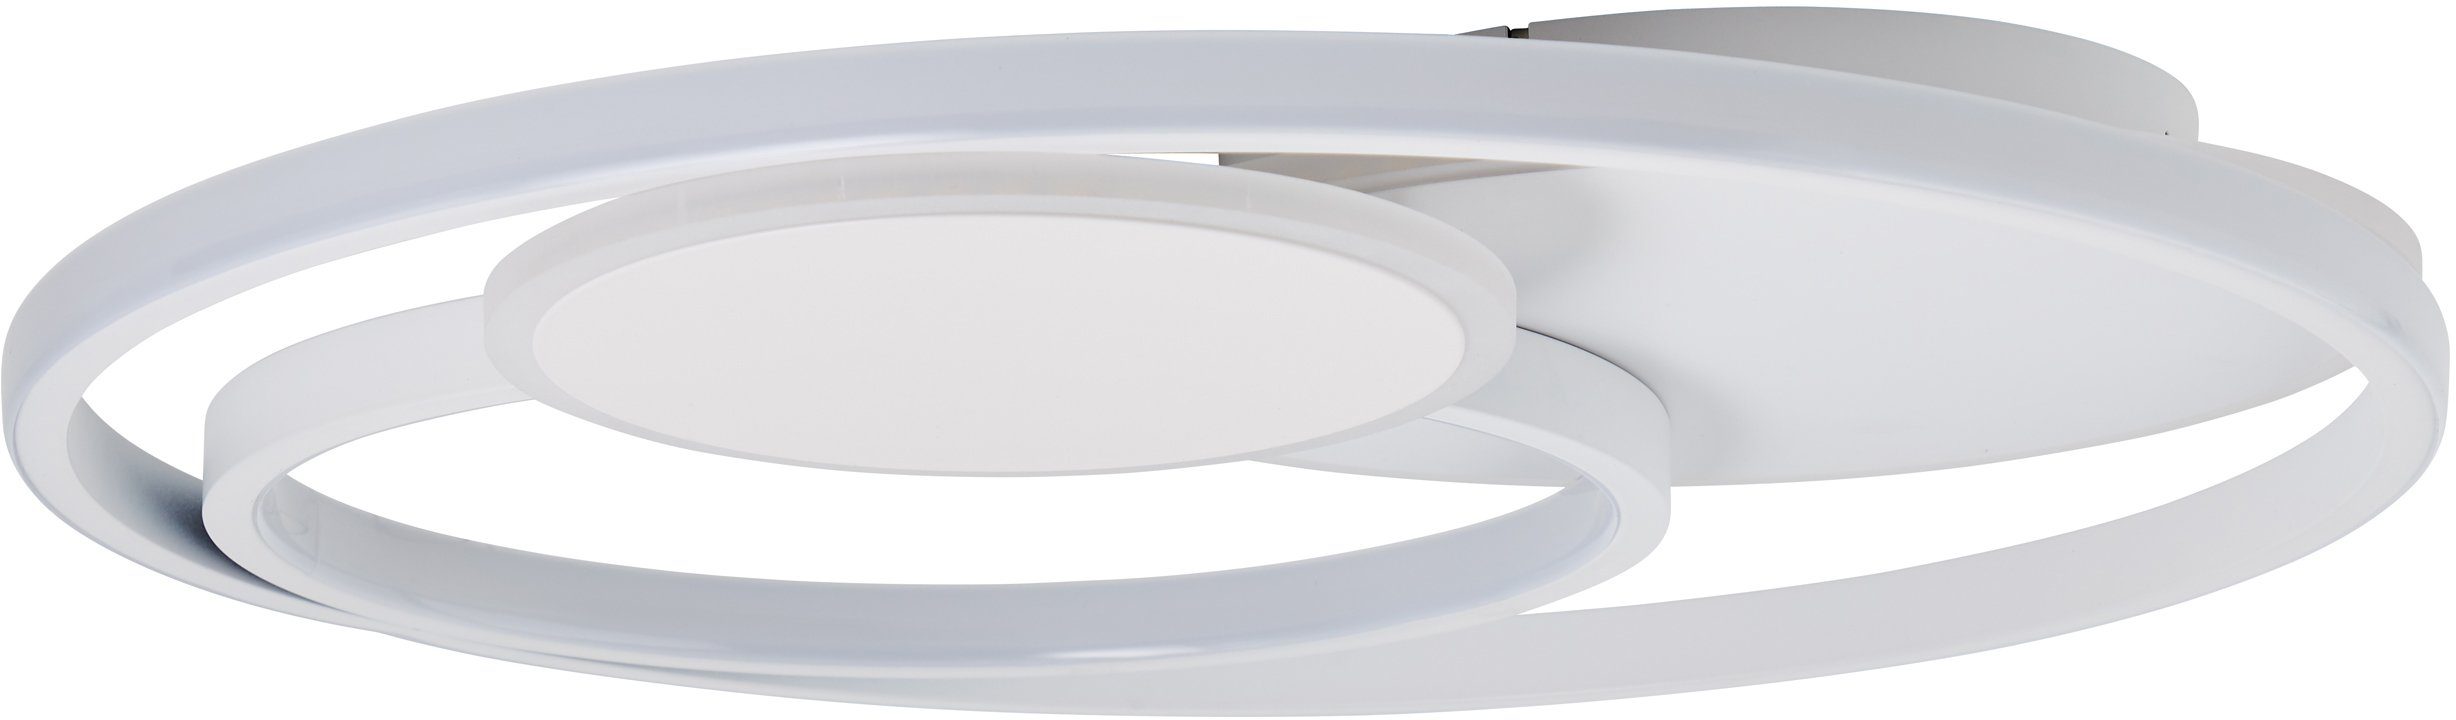 Brilliant Deckenleuchte Runda, Runda LED Deckenleuchte 50cm weiß matt 1x LED  integriert, 43W LED in